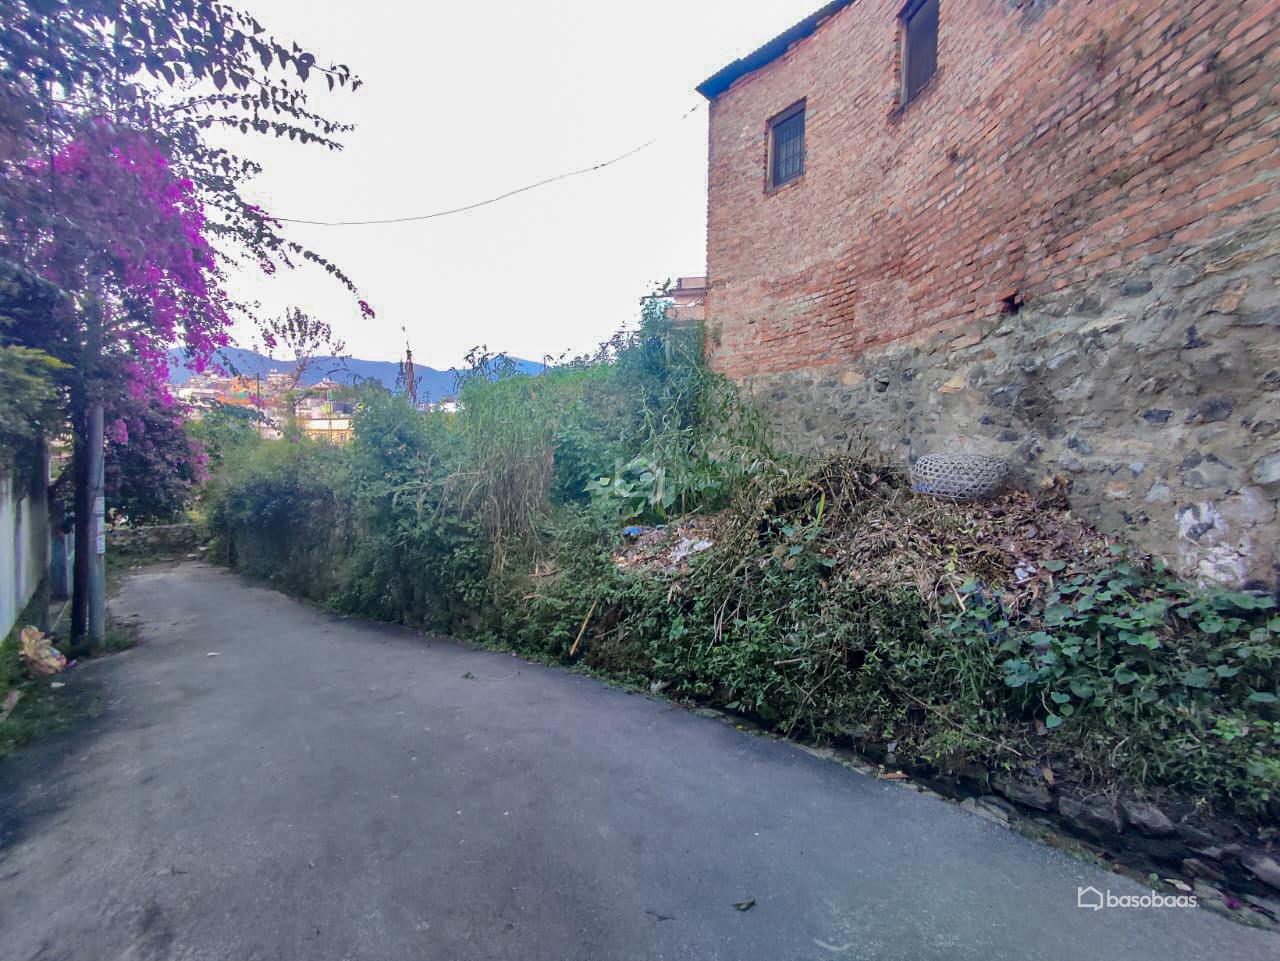 Residental Land : Land for Sale in Bansbari, Kathmandu Image 5